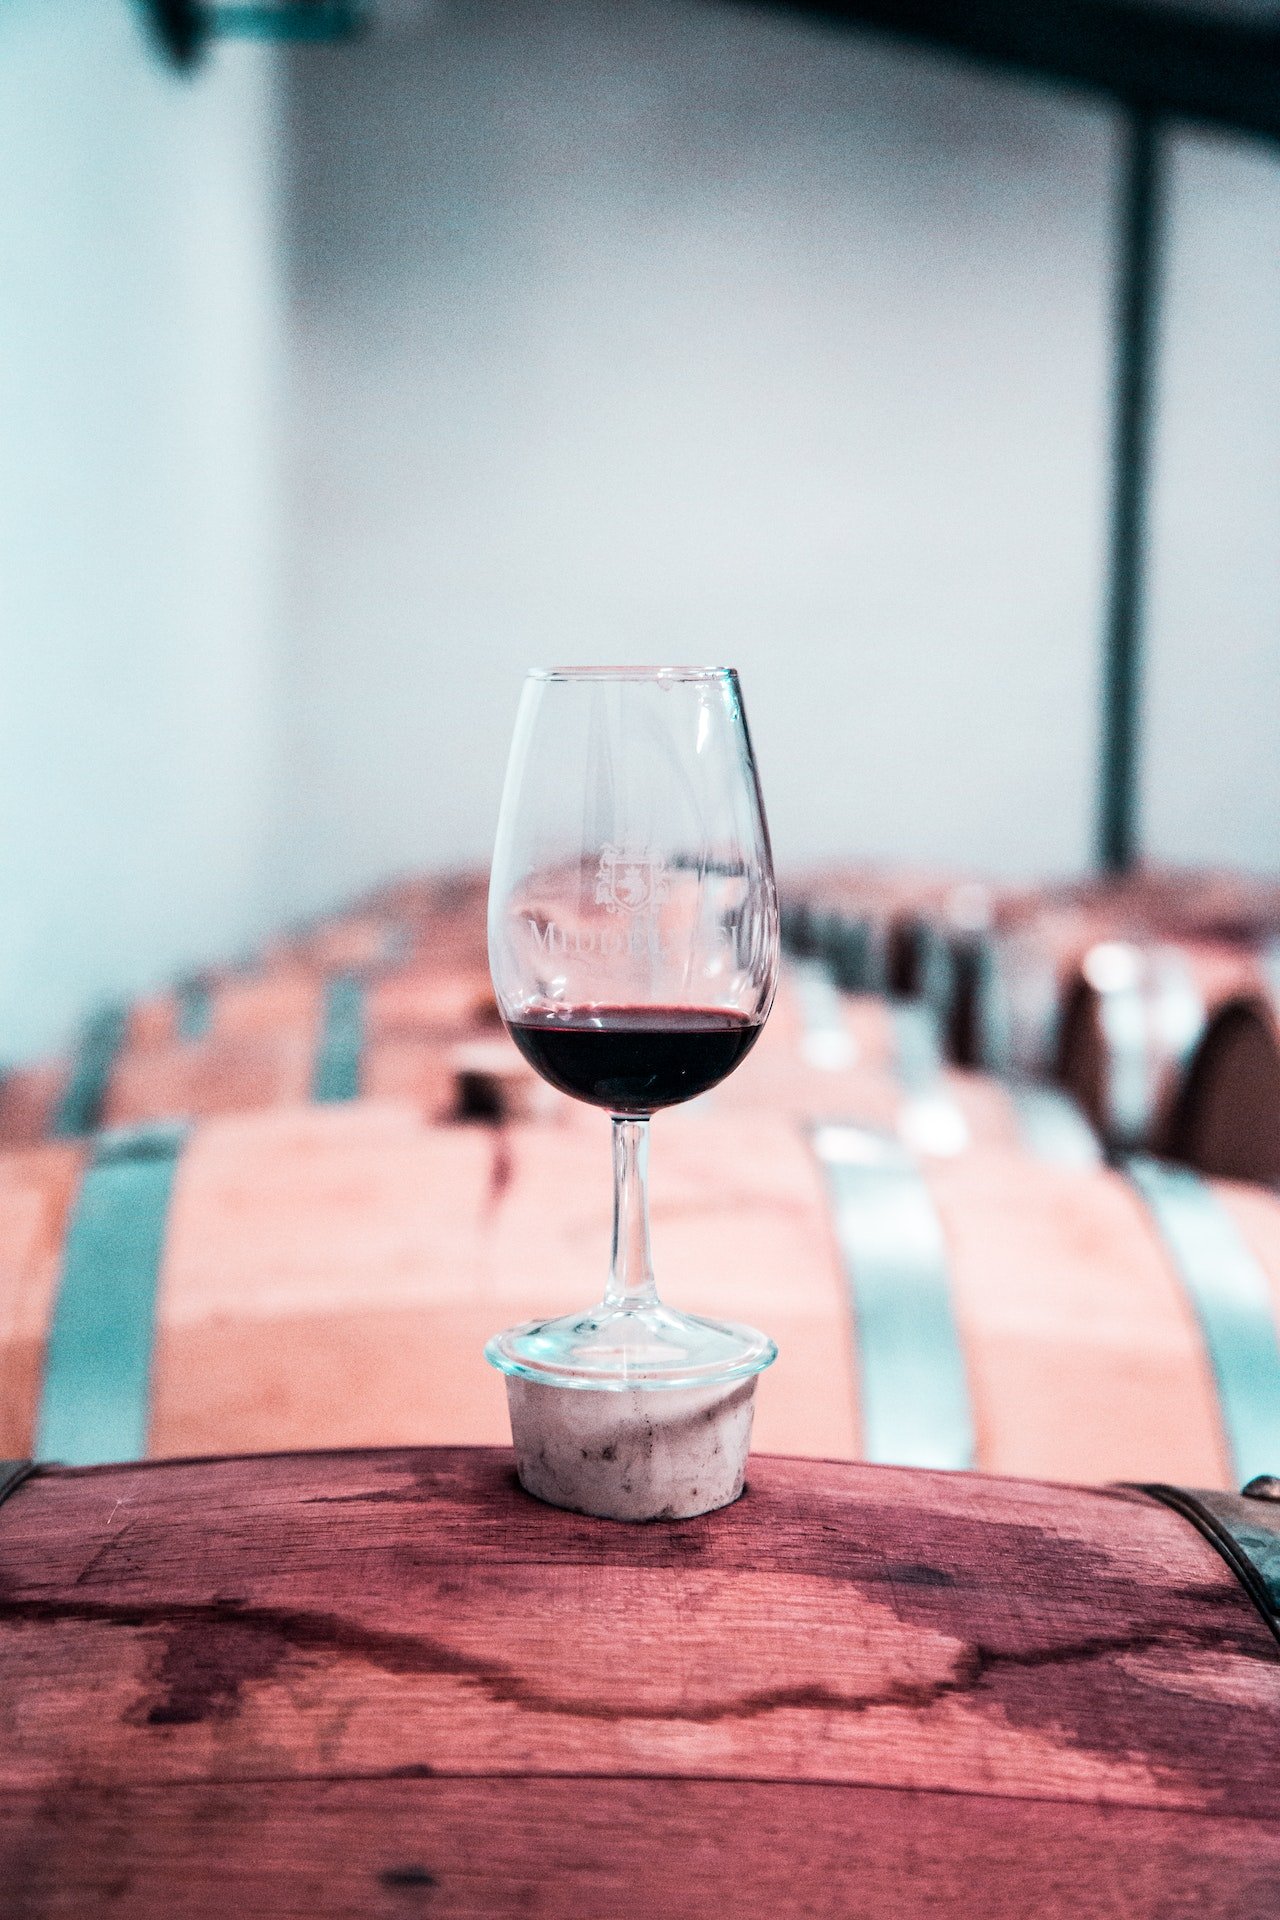 Guía útil para catar vino a ciegas y descifrar un vino sin saber nada del vino